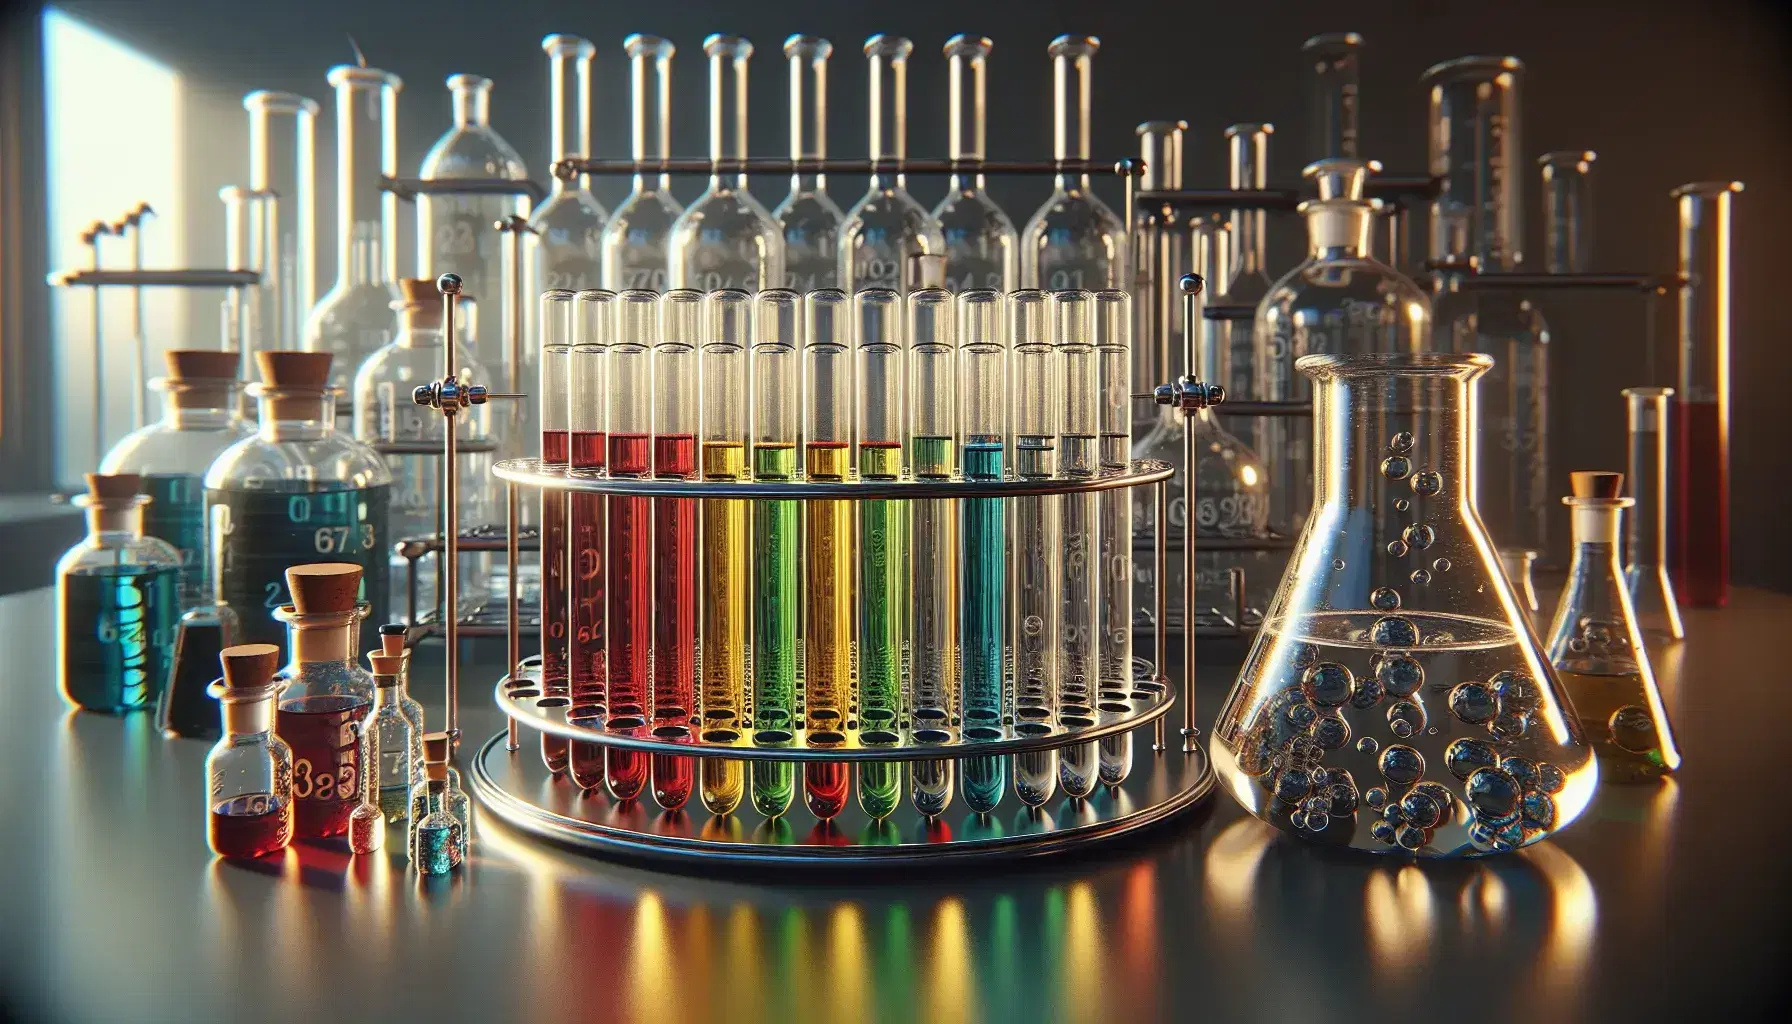 Tubos de ensayo con líquidos de colores rojo, amarillo, verde, azul y transparente en soporte metálico, con frascos de vidrio al fondo en un laboratorio.